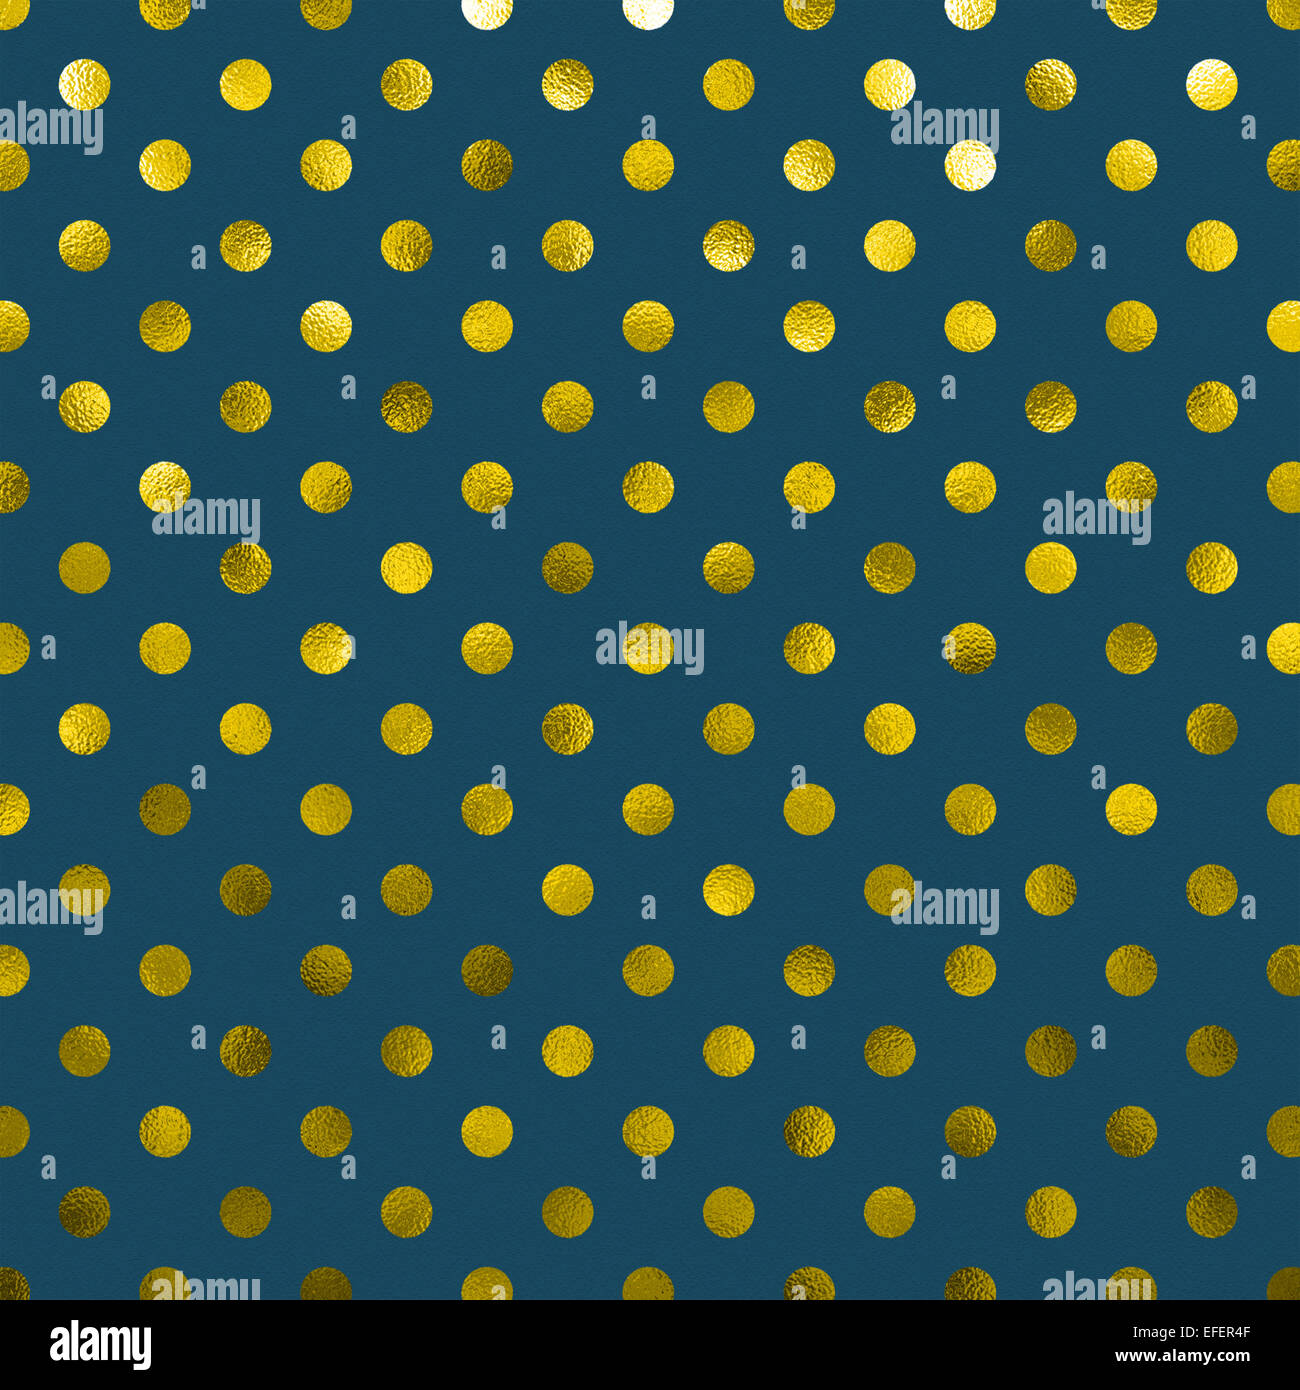 Oro amarillo azul pizarra oscuro Goldenrod lámina metálica Polka Dot Pattern Swiss Dots papel de textura de fondo de color Foto de stock